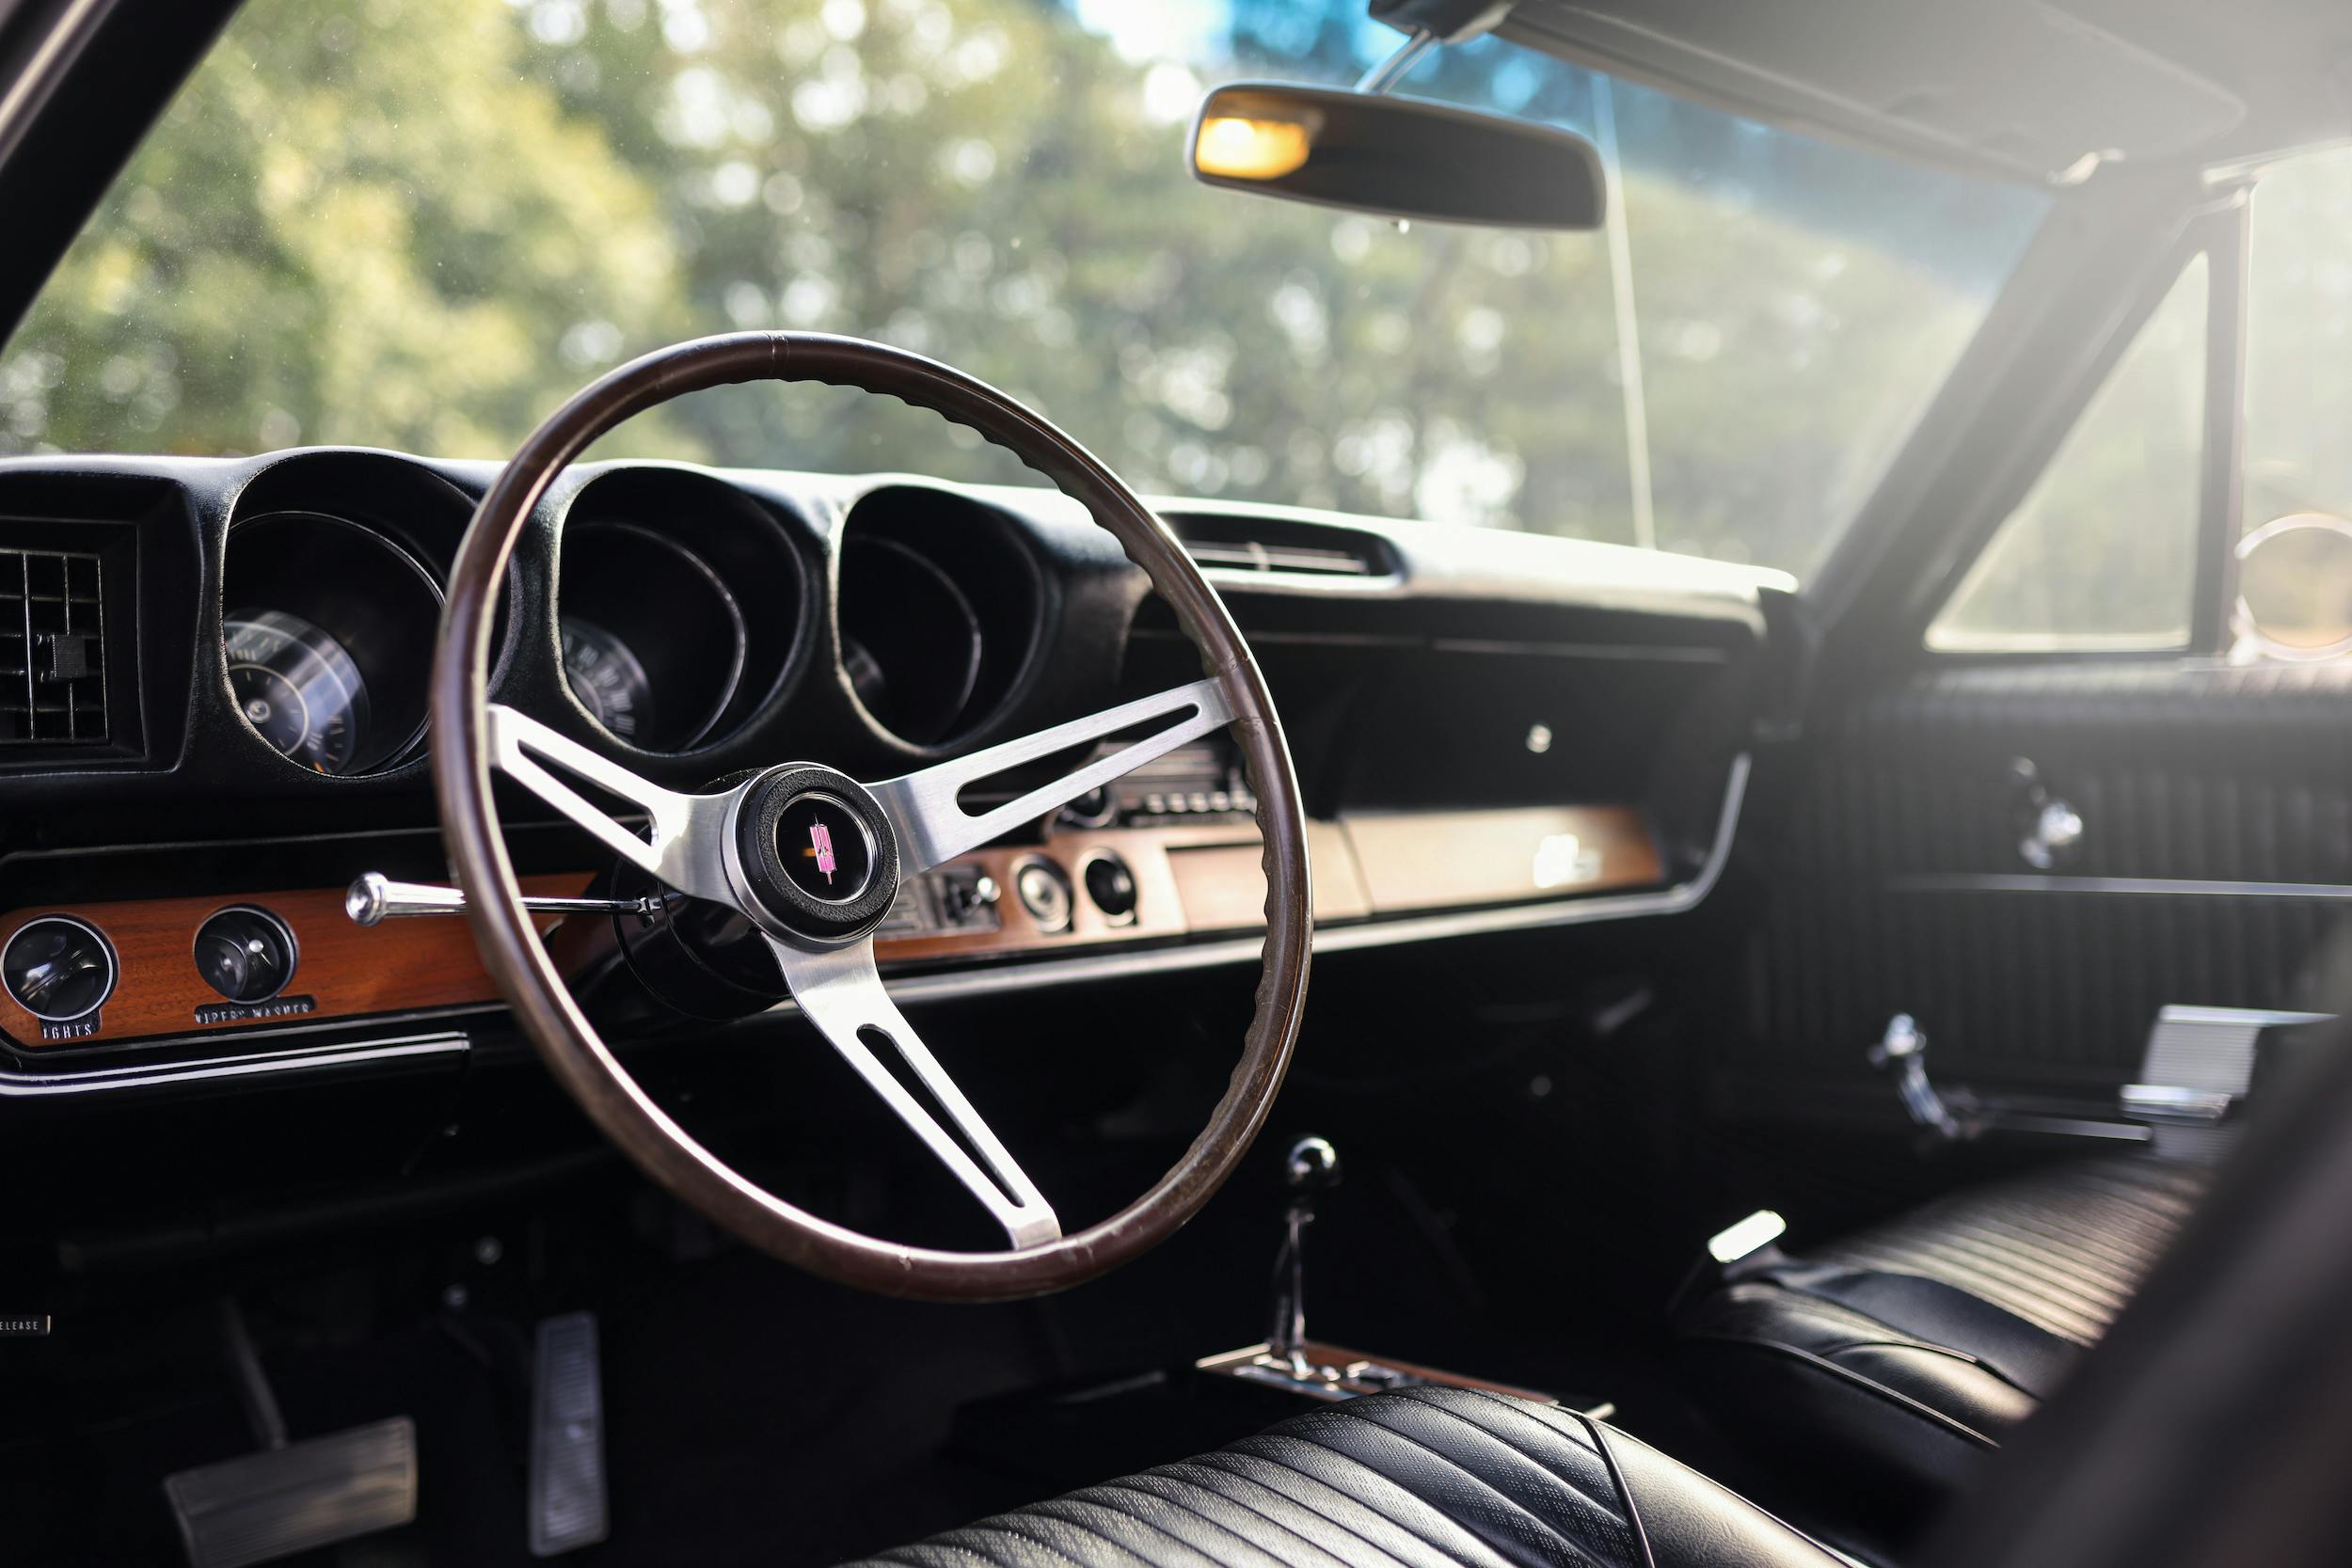 1968 Hurst Oldsmobile interior soft light